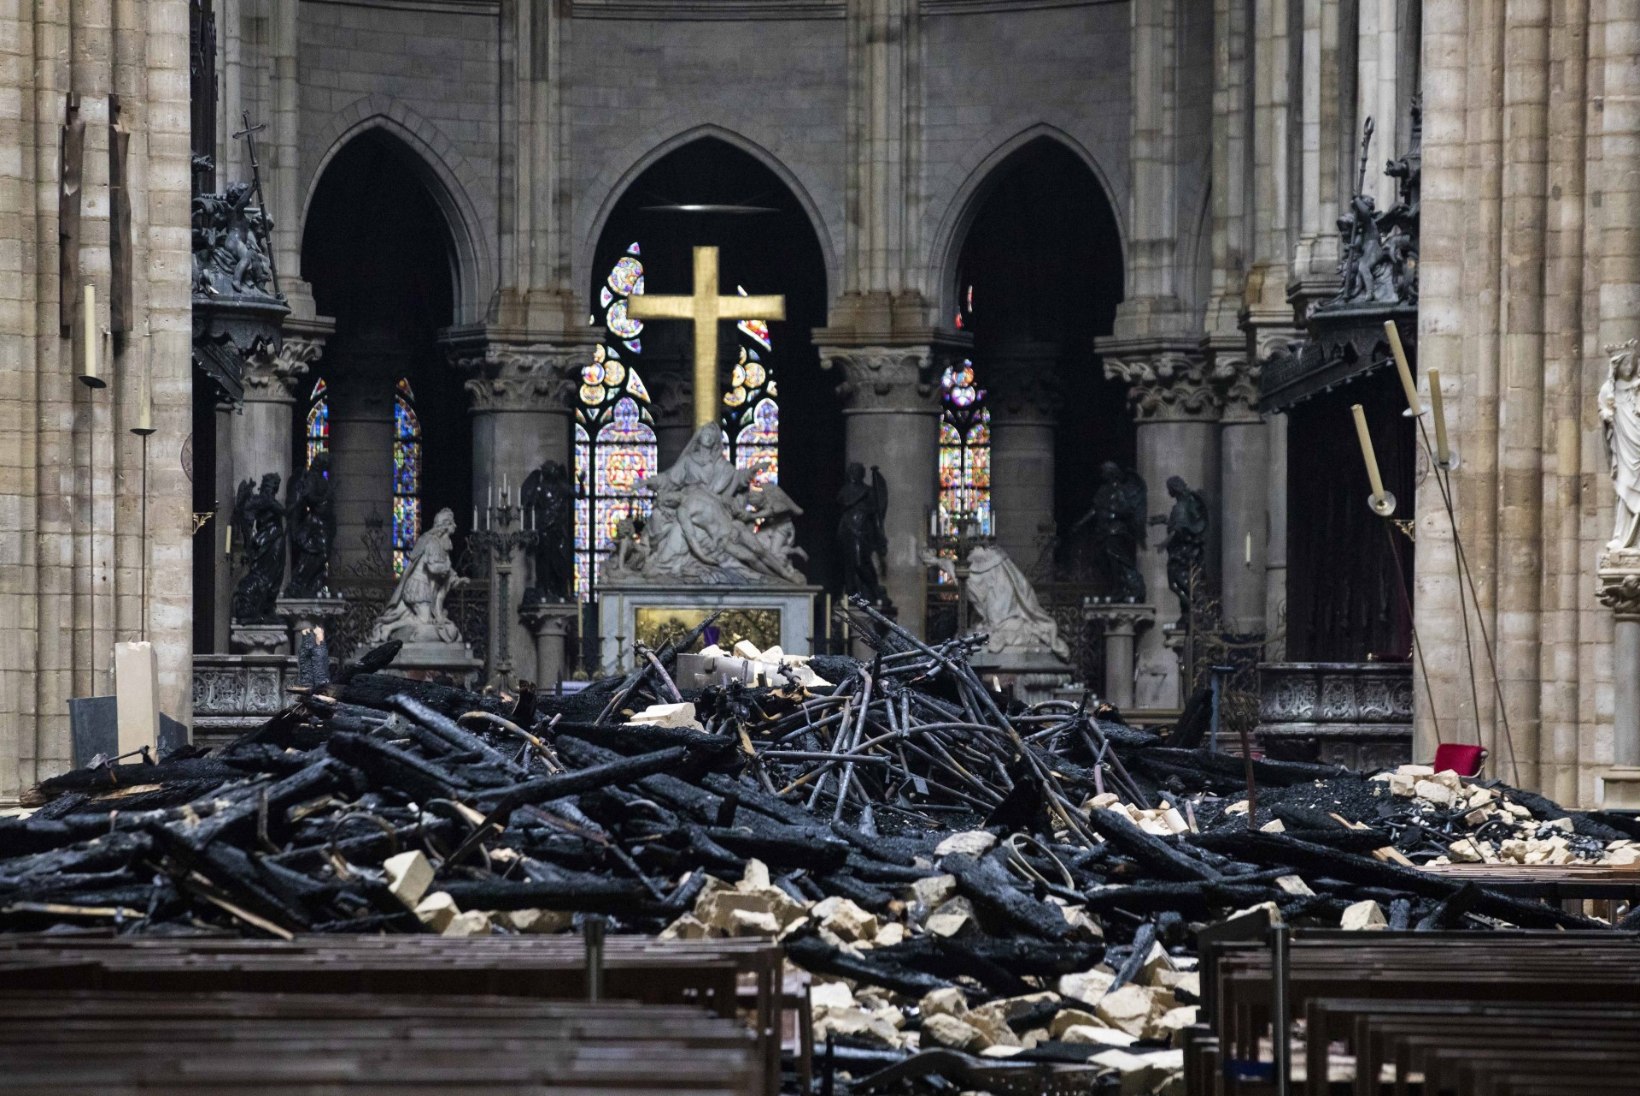 Notre Dame’i restaureerimine – kuidas päästa ikoonilist ehitist?